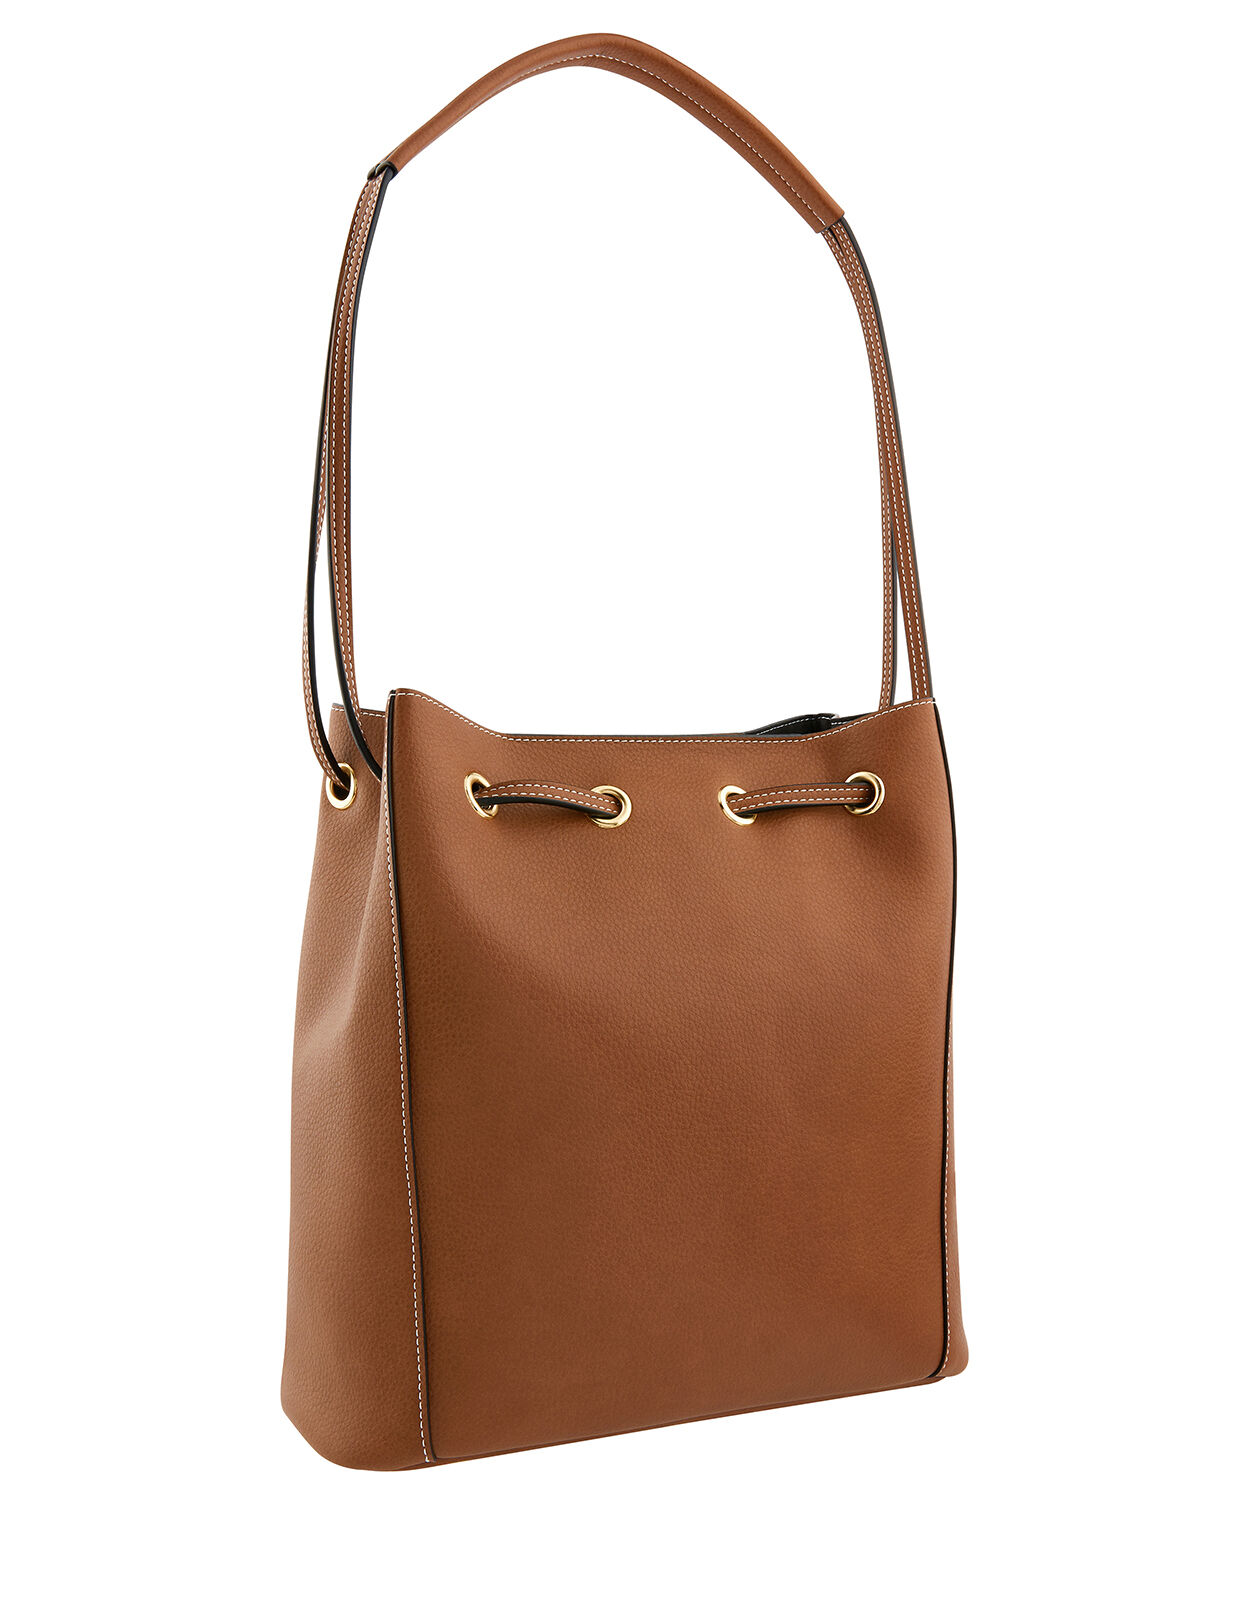 accessorize leather purse